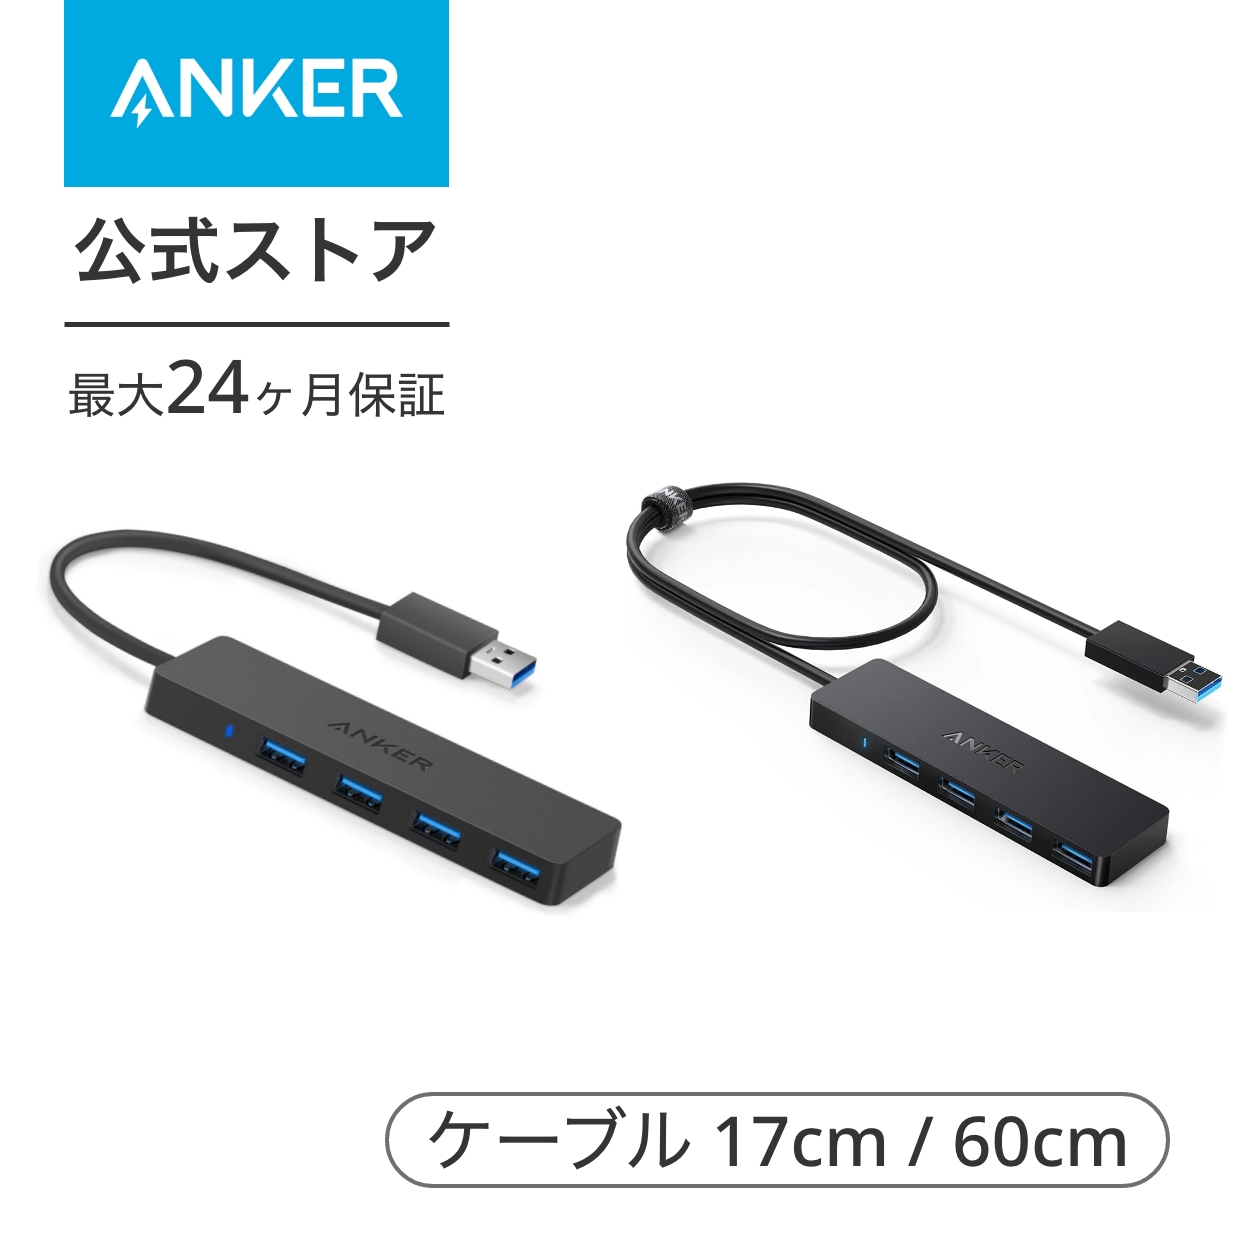 【楽天市場】Anker USB3.0 ウルトラスリム 4ポートハブ USB3.0